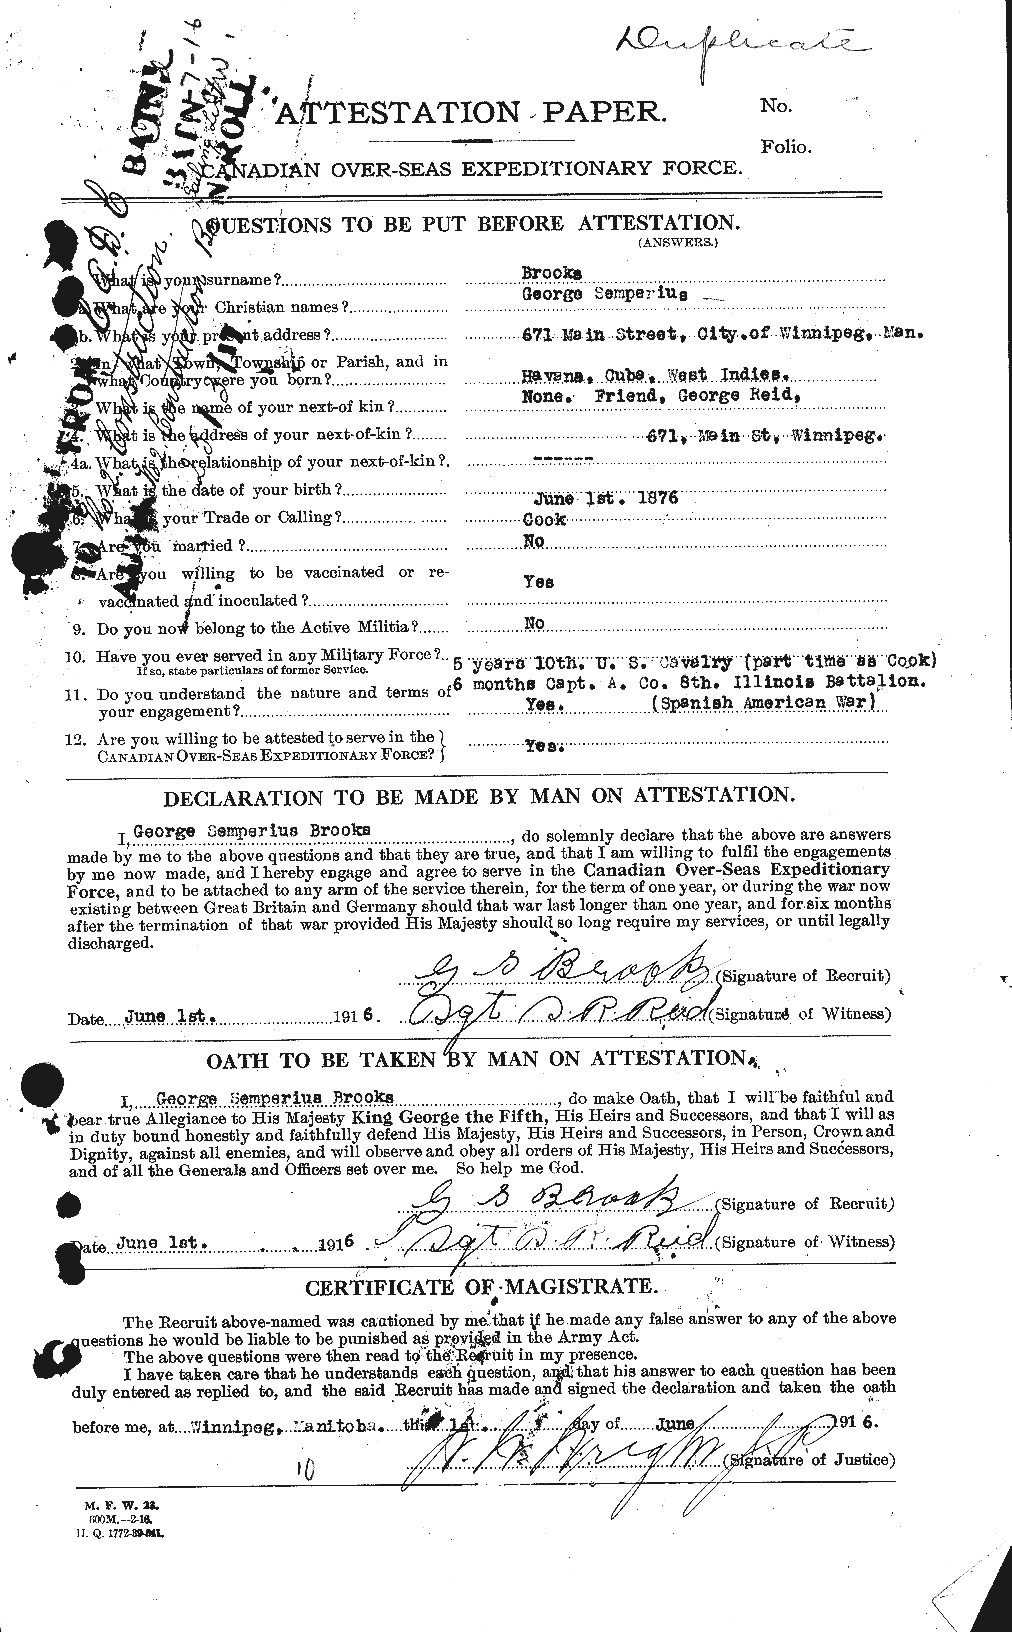 Dossiers du Personnel de la Première Guerre mondiale - CEC 261663a